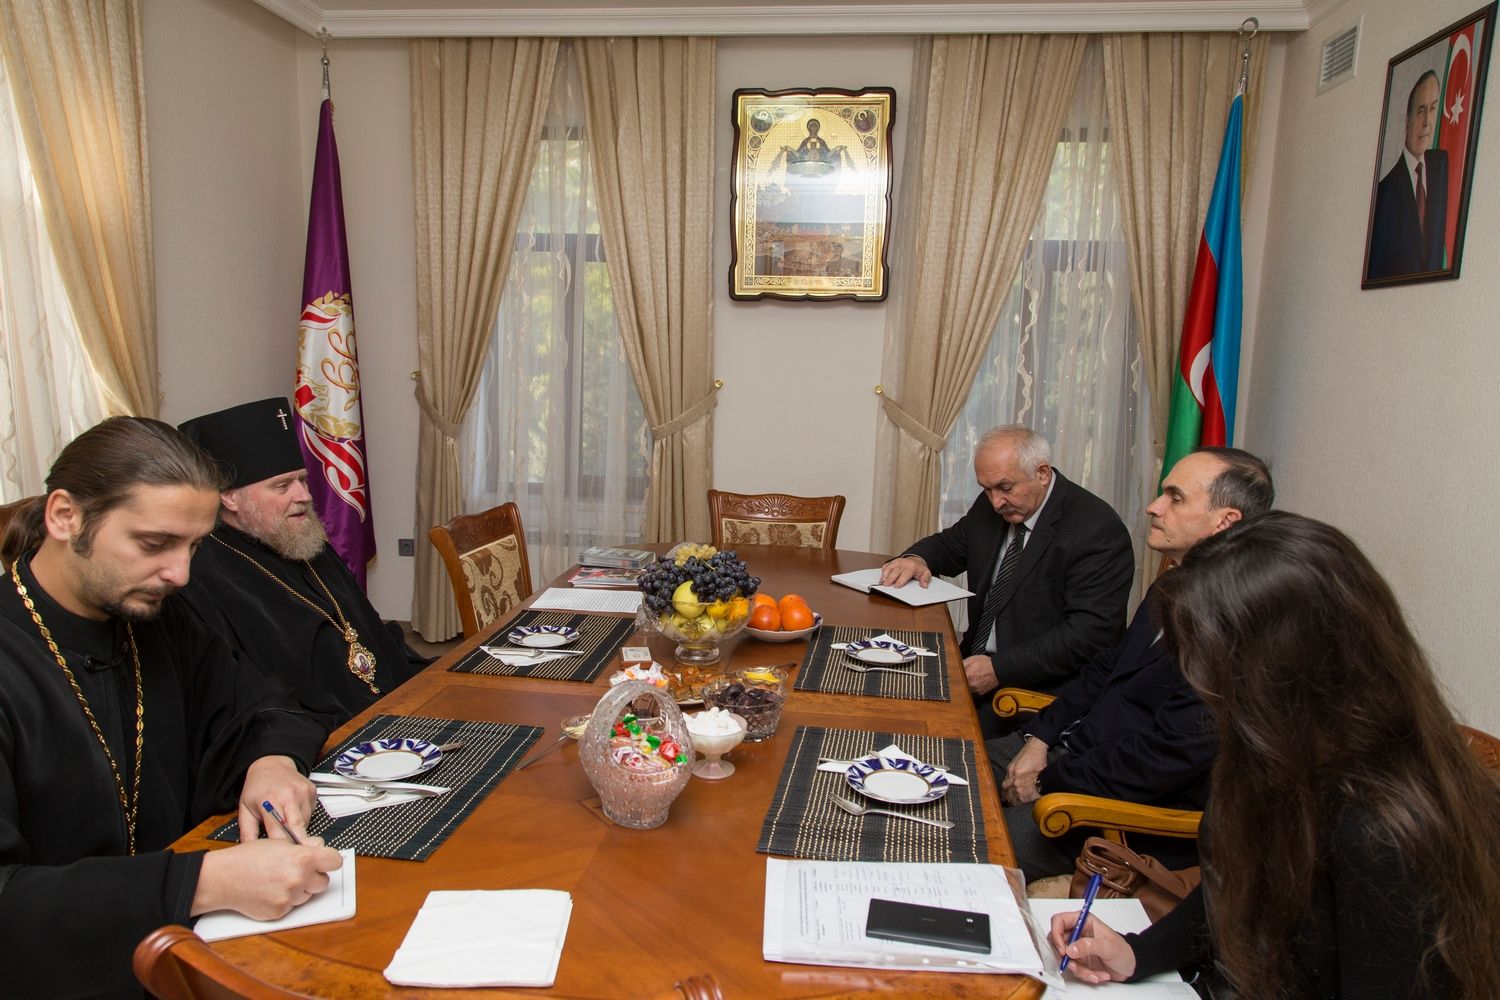 Высокопреосвященный архиепископ Александр встретился с исполнительным директором Бакинского международного центра мультикультурализма г-ном Мамедовым А.